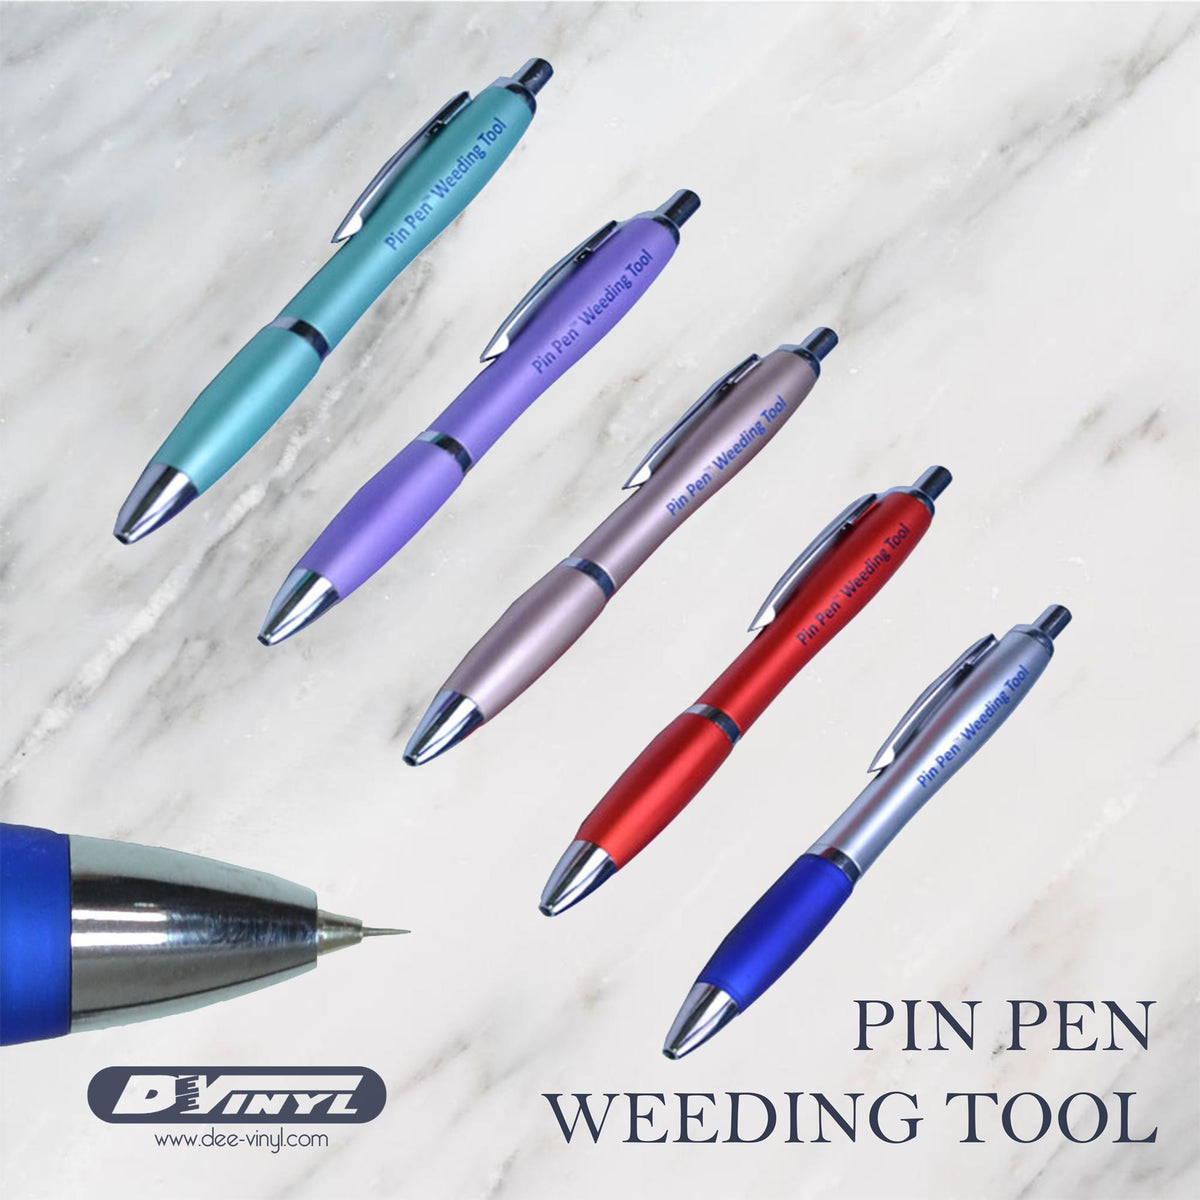  GIRAFVINYL Pin Pen Weeding Tools for Vinyl,3Pcs